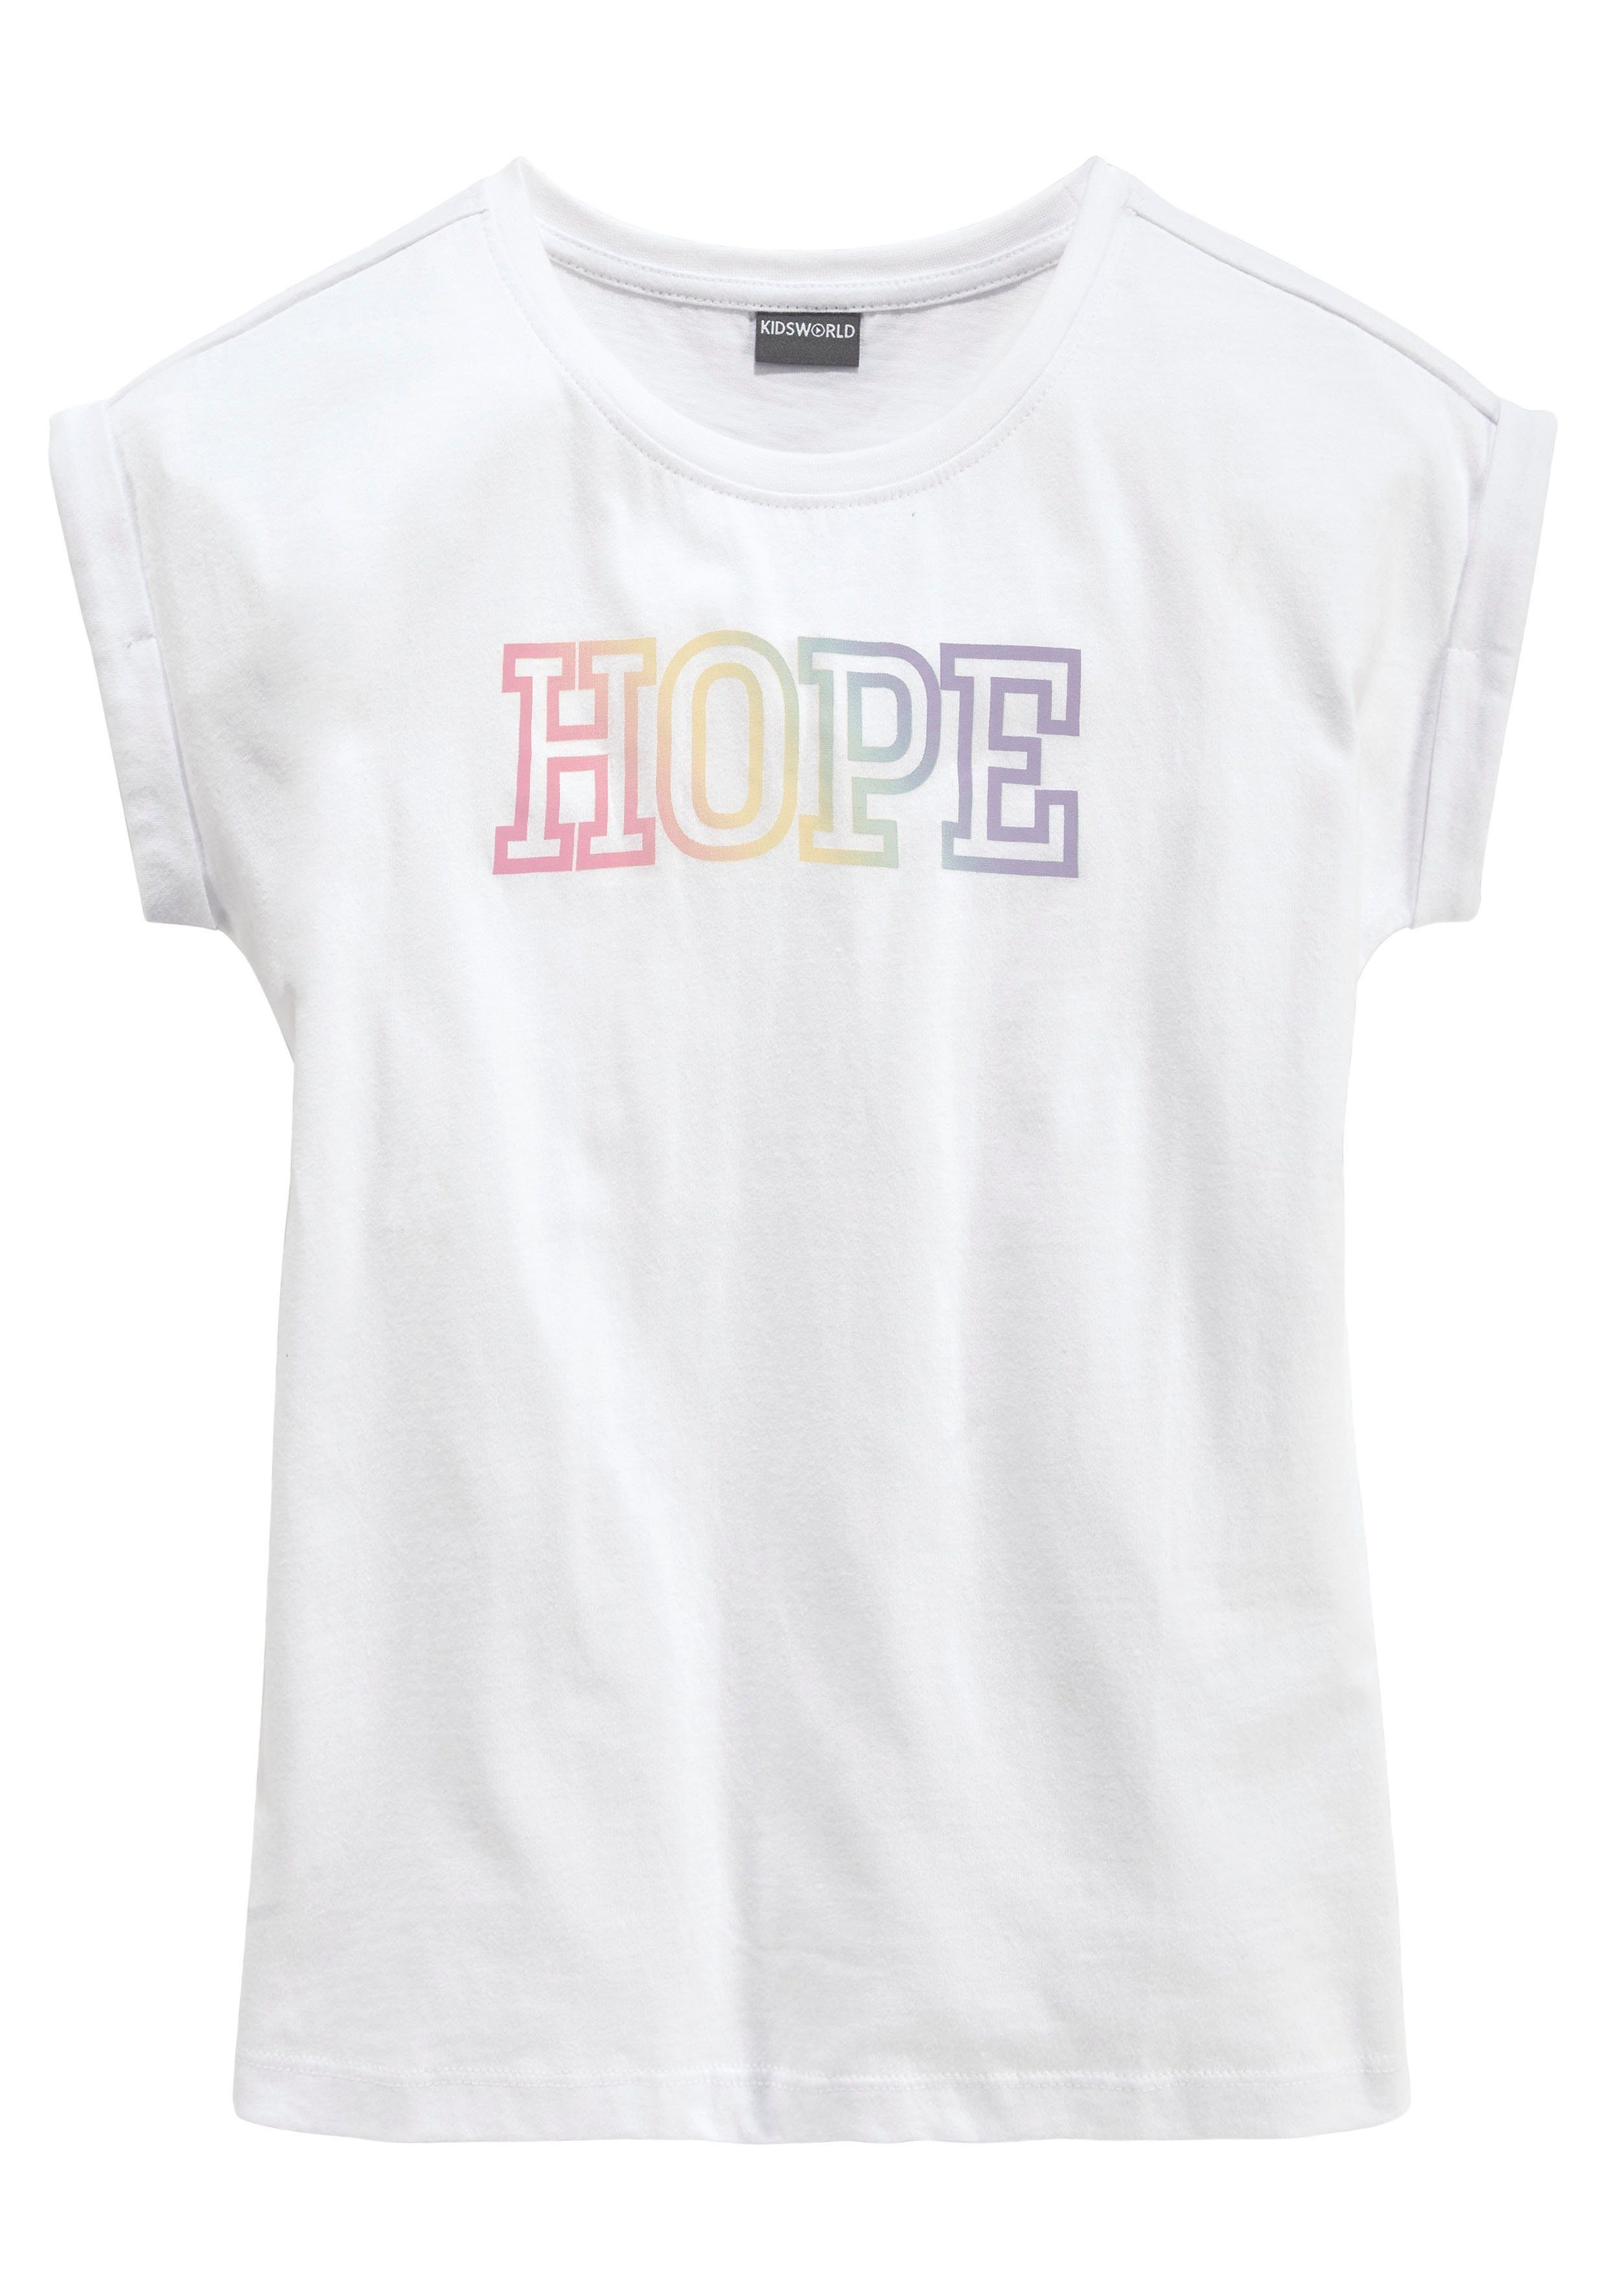 Statementdruck KIDSWORLD mit T-Shirt HOPE